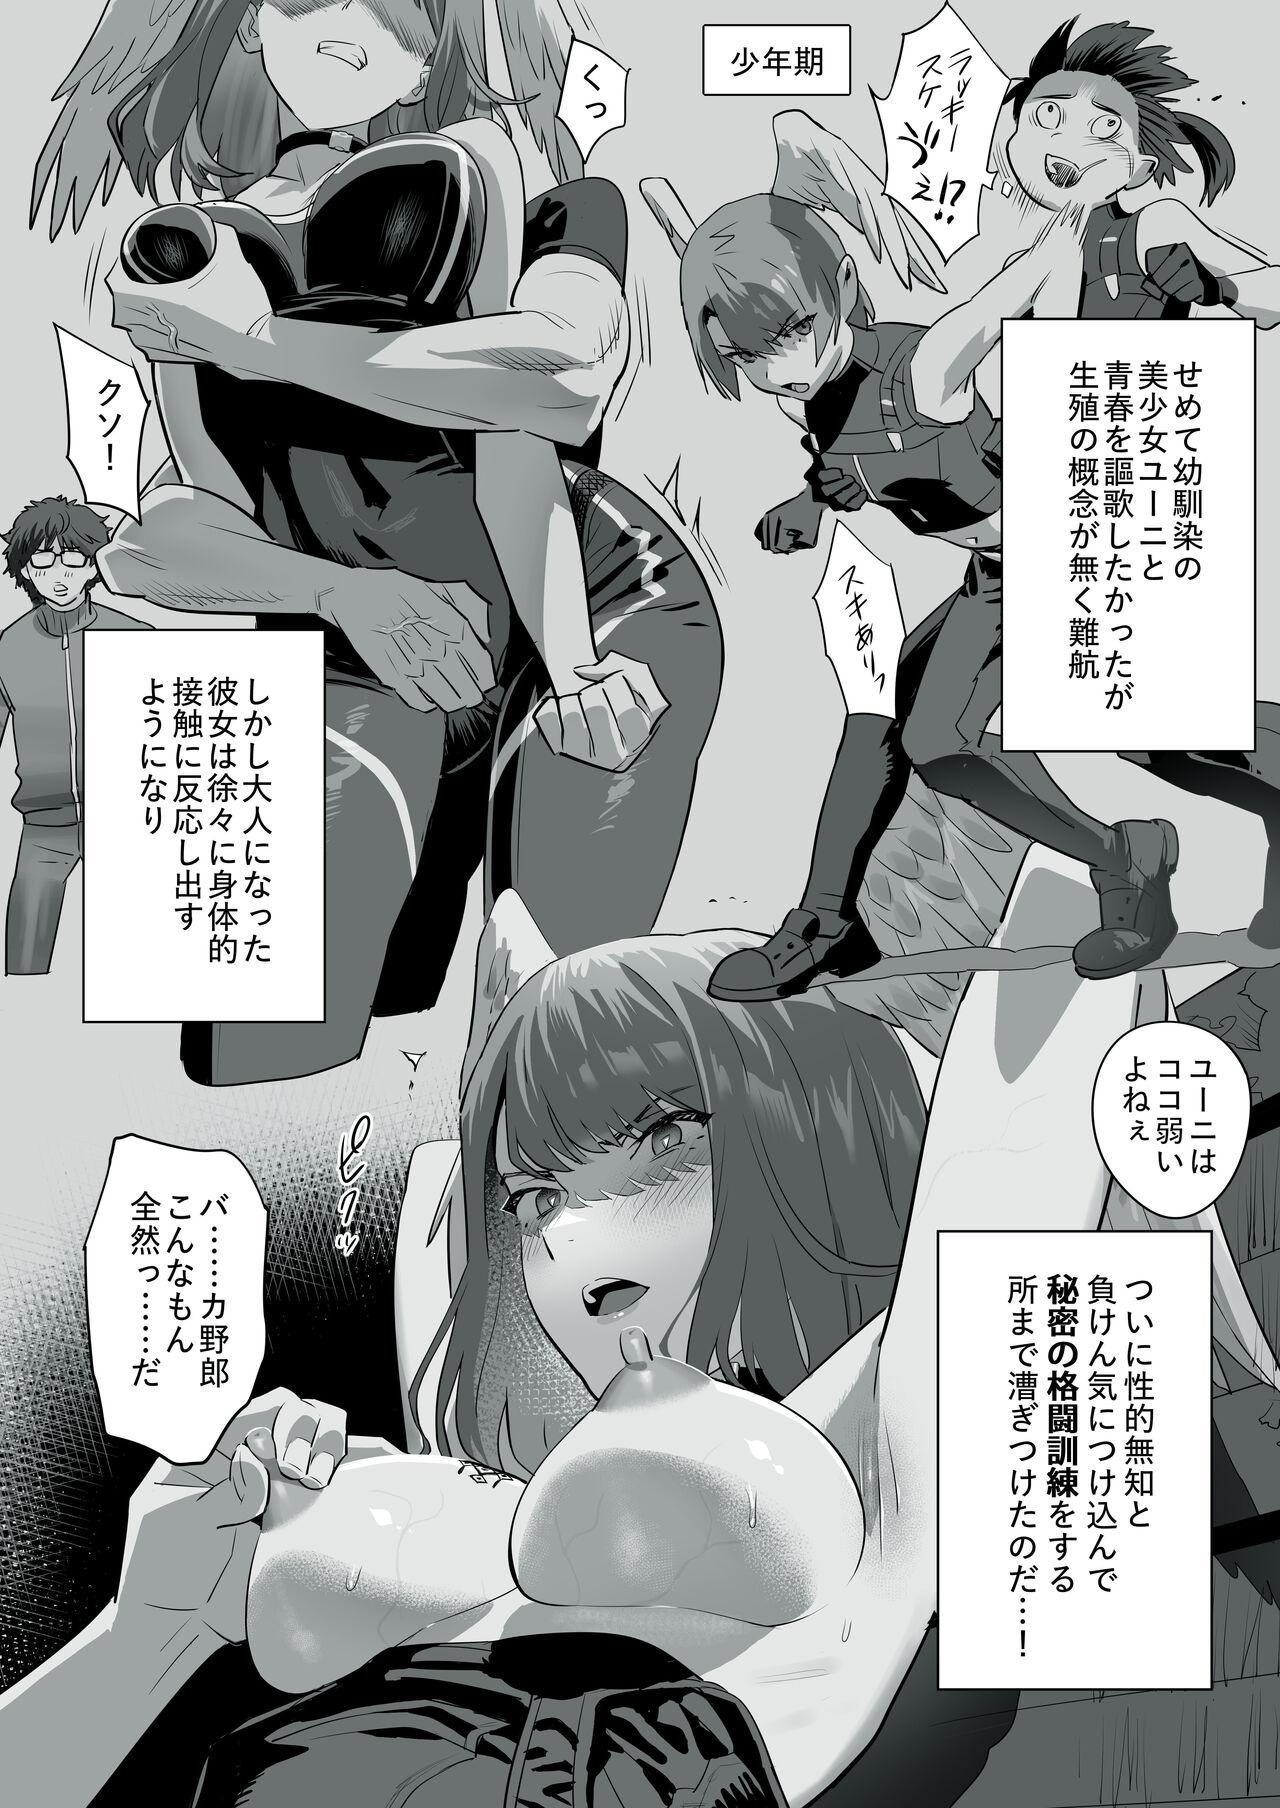 Storyline Tensei-saki ga Xenoblade 3 Manga - Xenoblade Xenoblade chronicles 3 Pov Blow Job - Picture 2